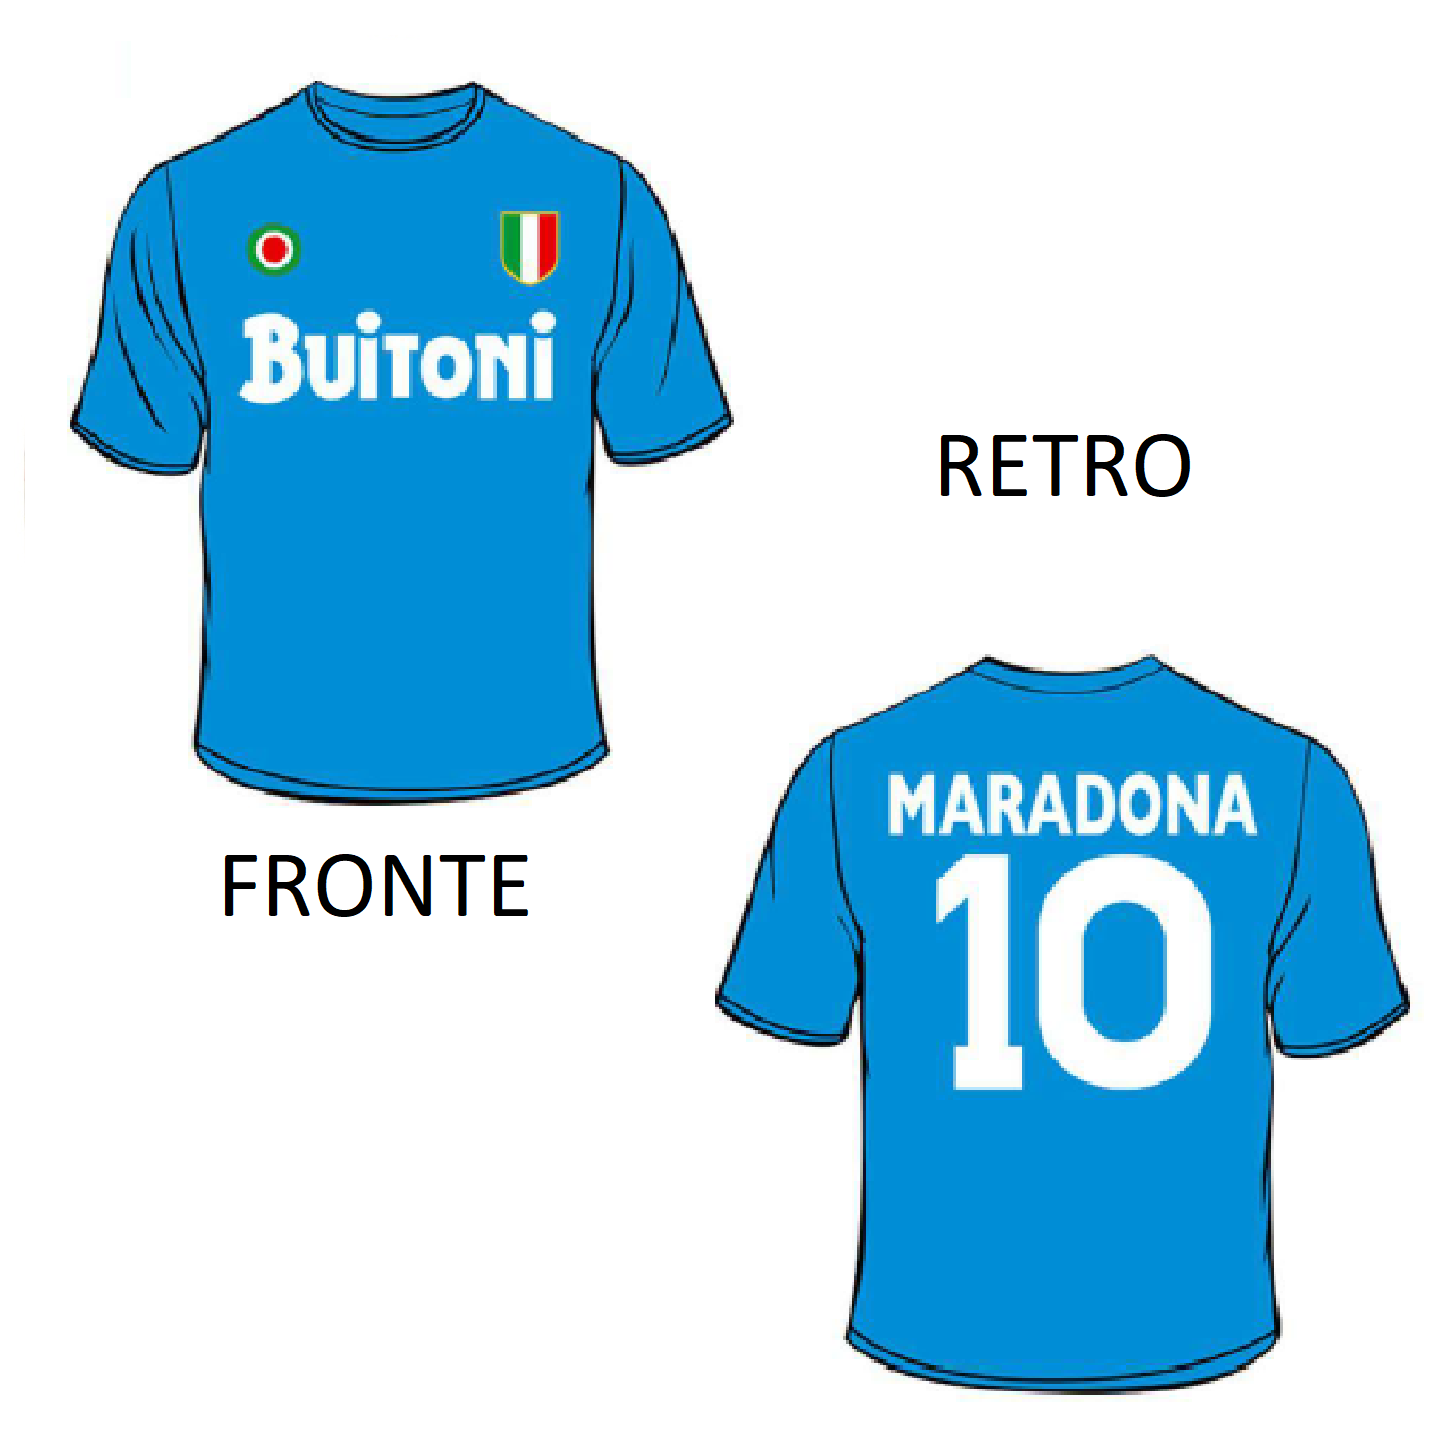 Maglia Maradona Buitoni (taglia S)